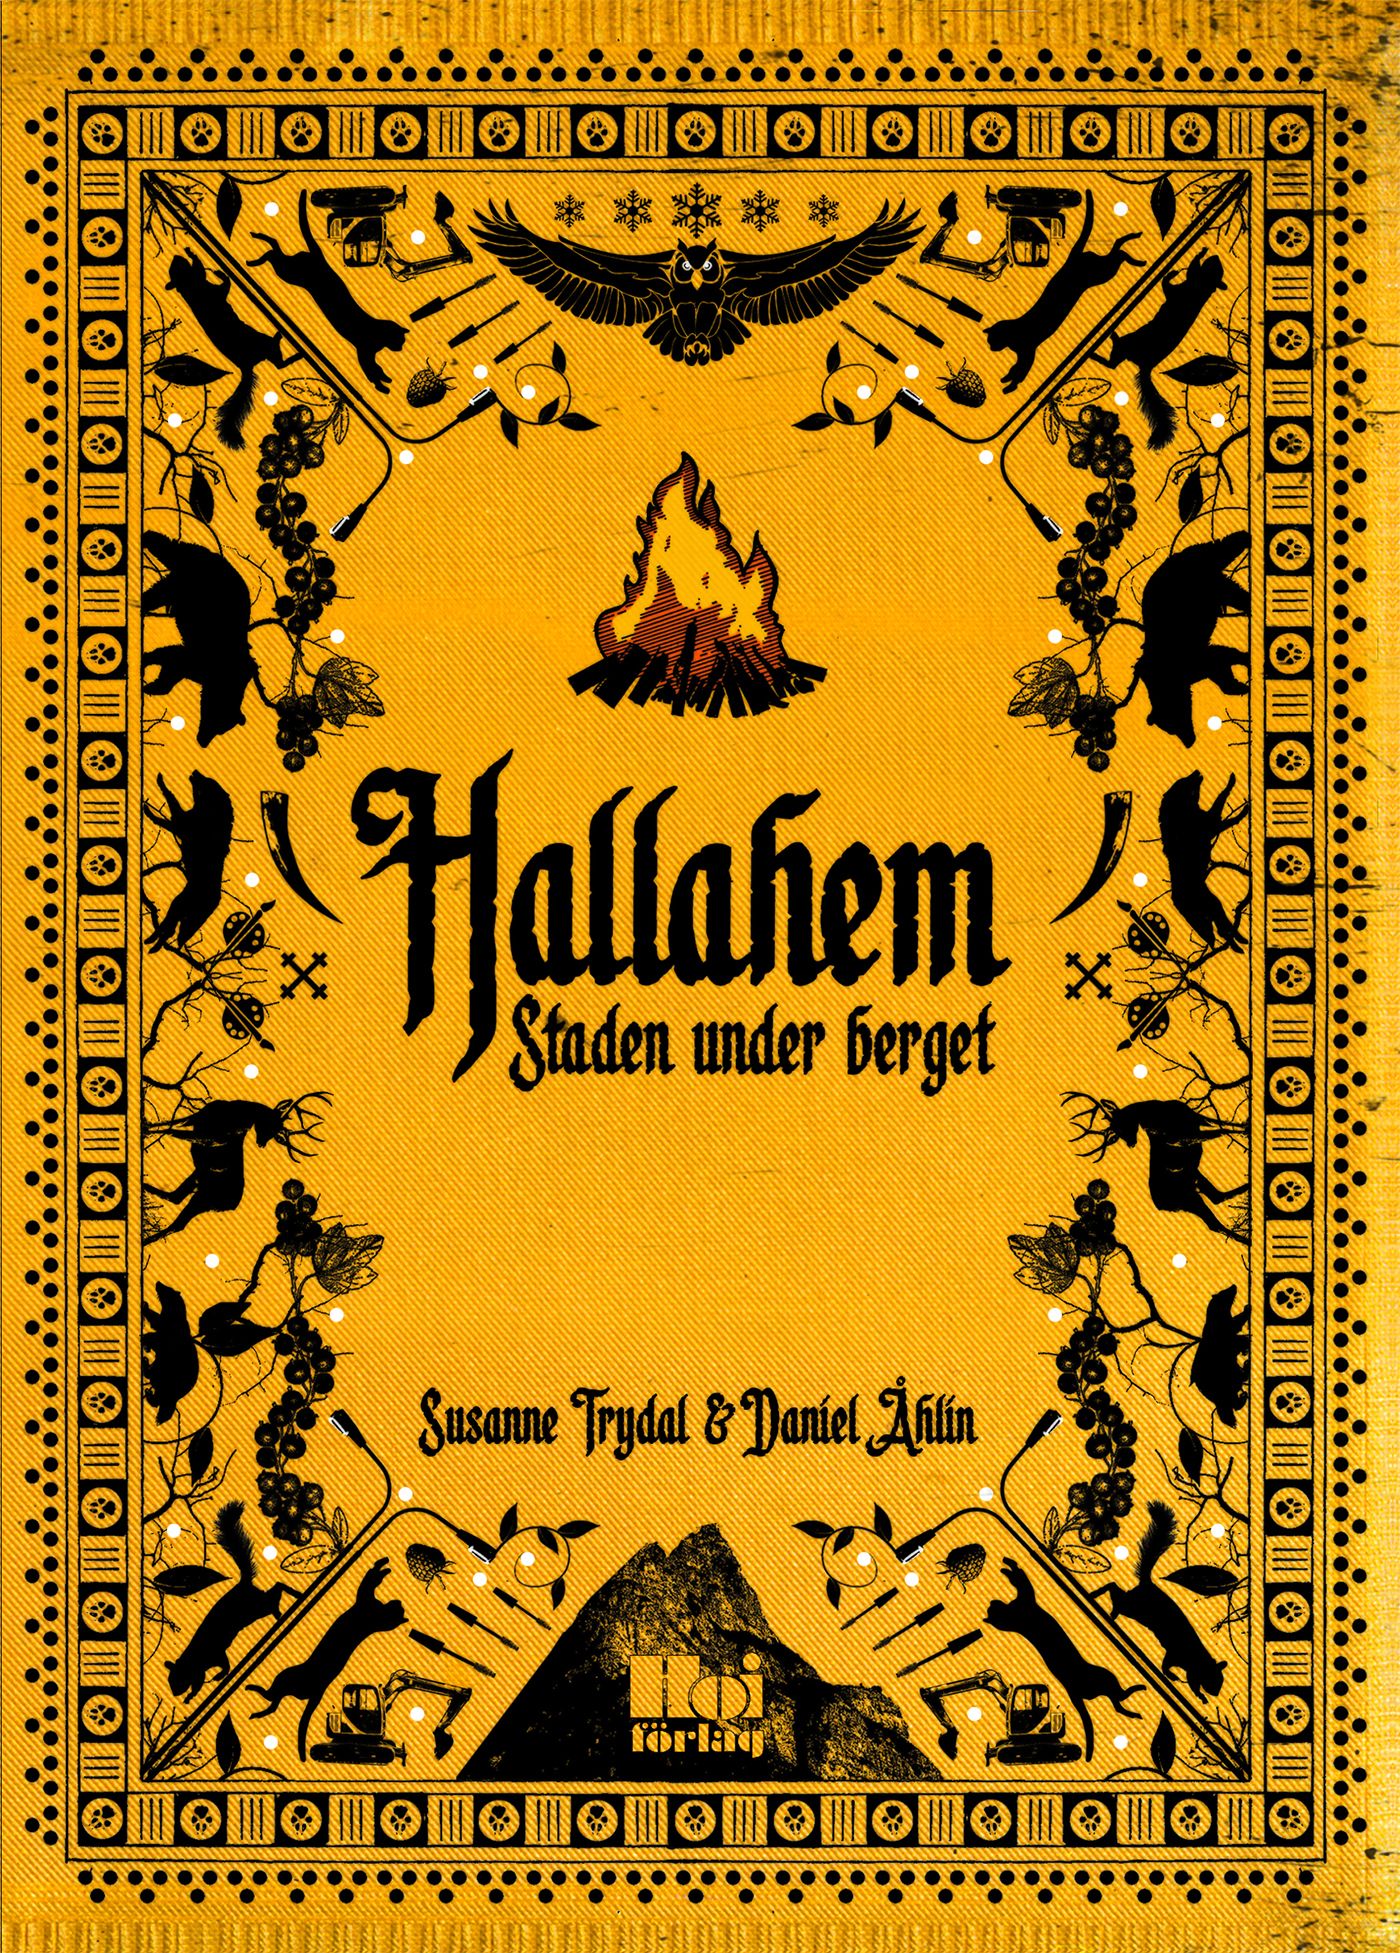 Hallahem - Staden under berget, e-bok av Susanne Trydal, Daniel Åhlin